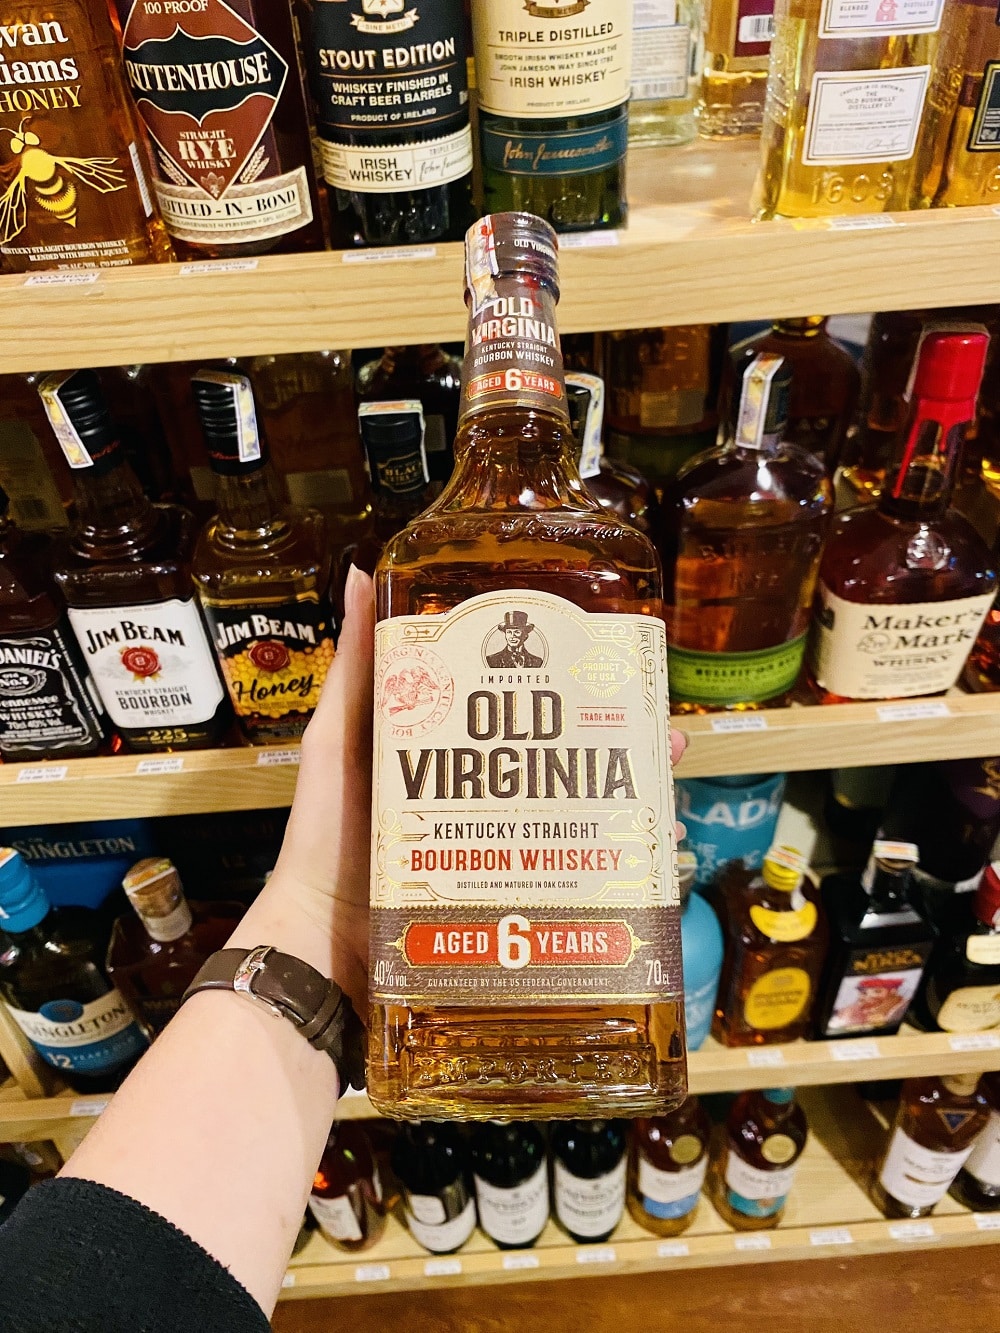 Mua rượu Old Virginia Bourbon Whiskey 6 Years chất lượng tại Hải Gia Cát